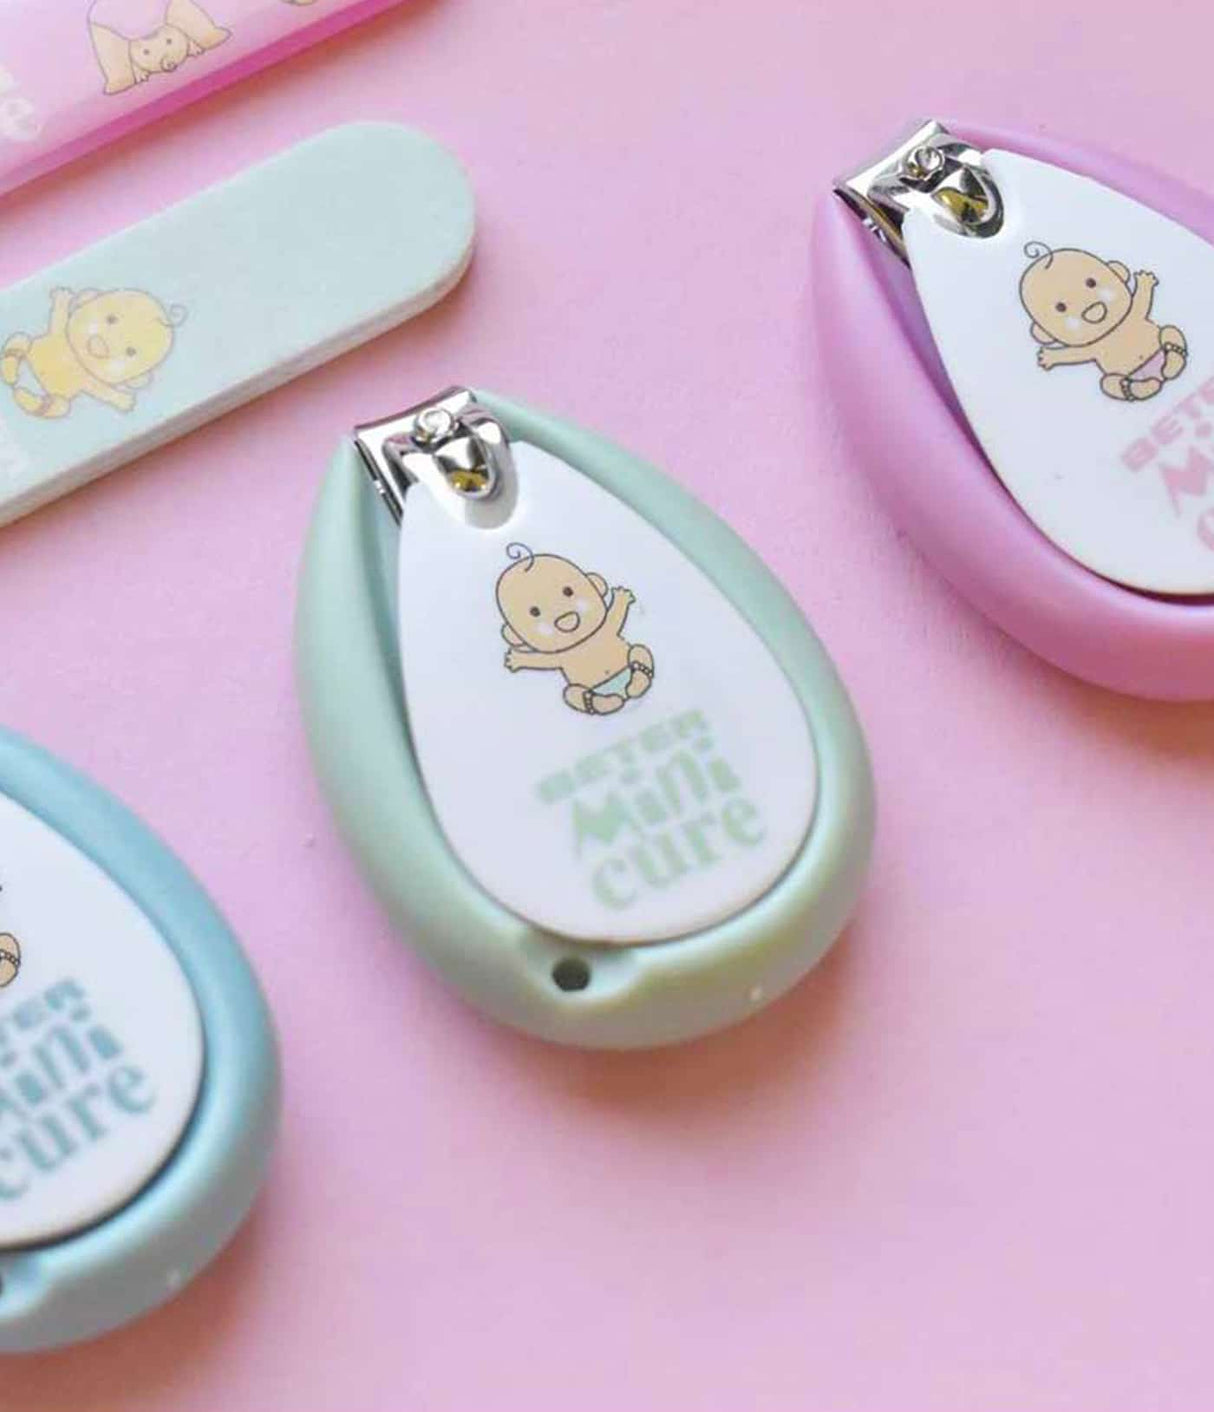 Kit Minicure para Bebé de Beter